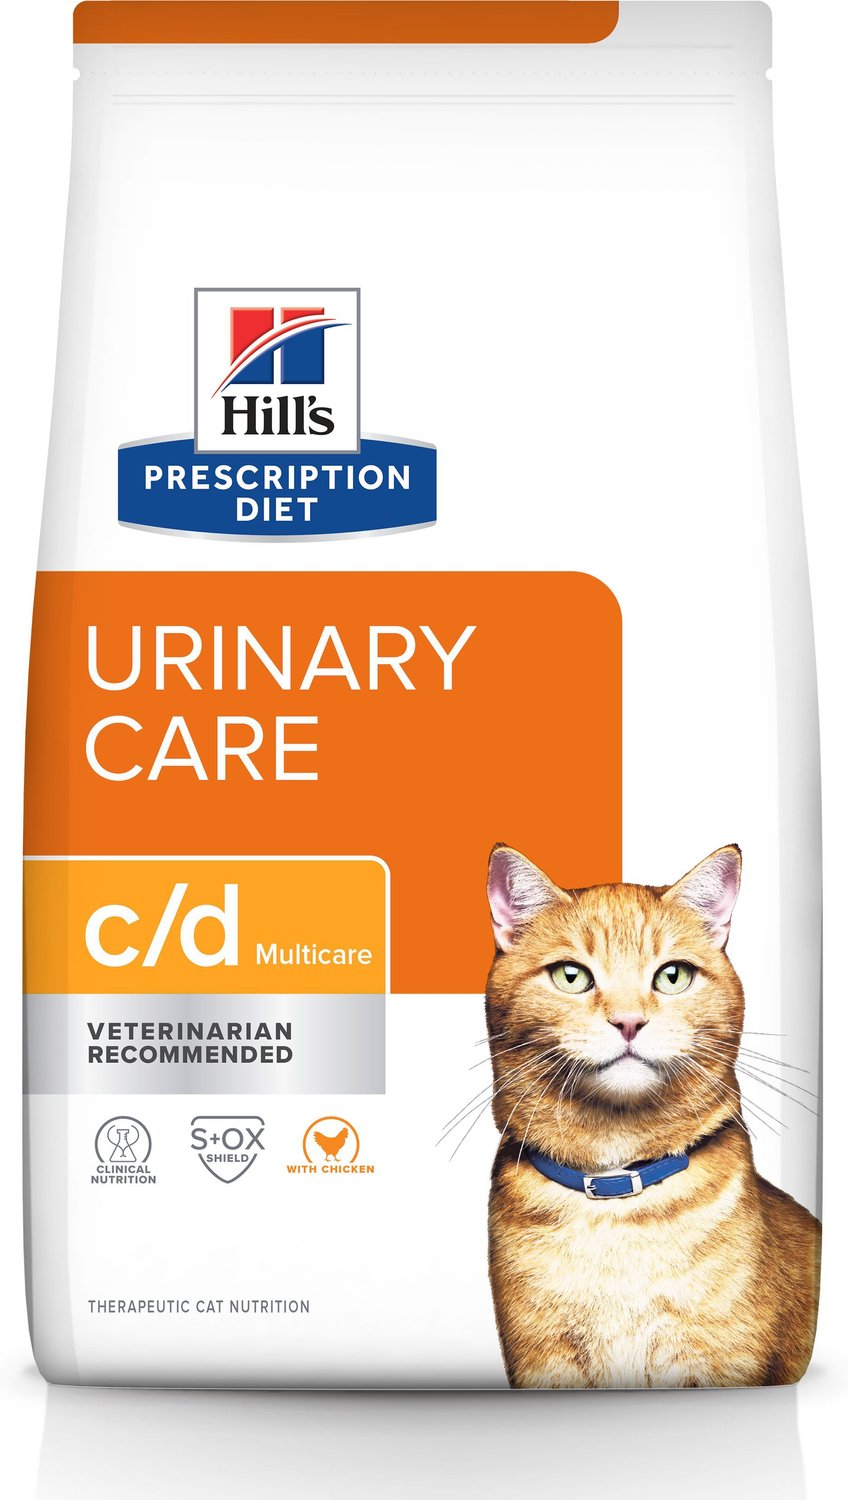 hill's prescription diet urinary care